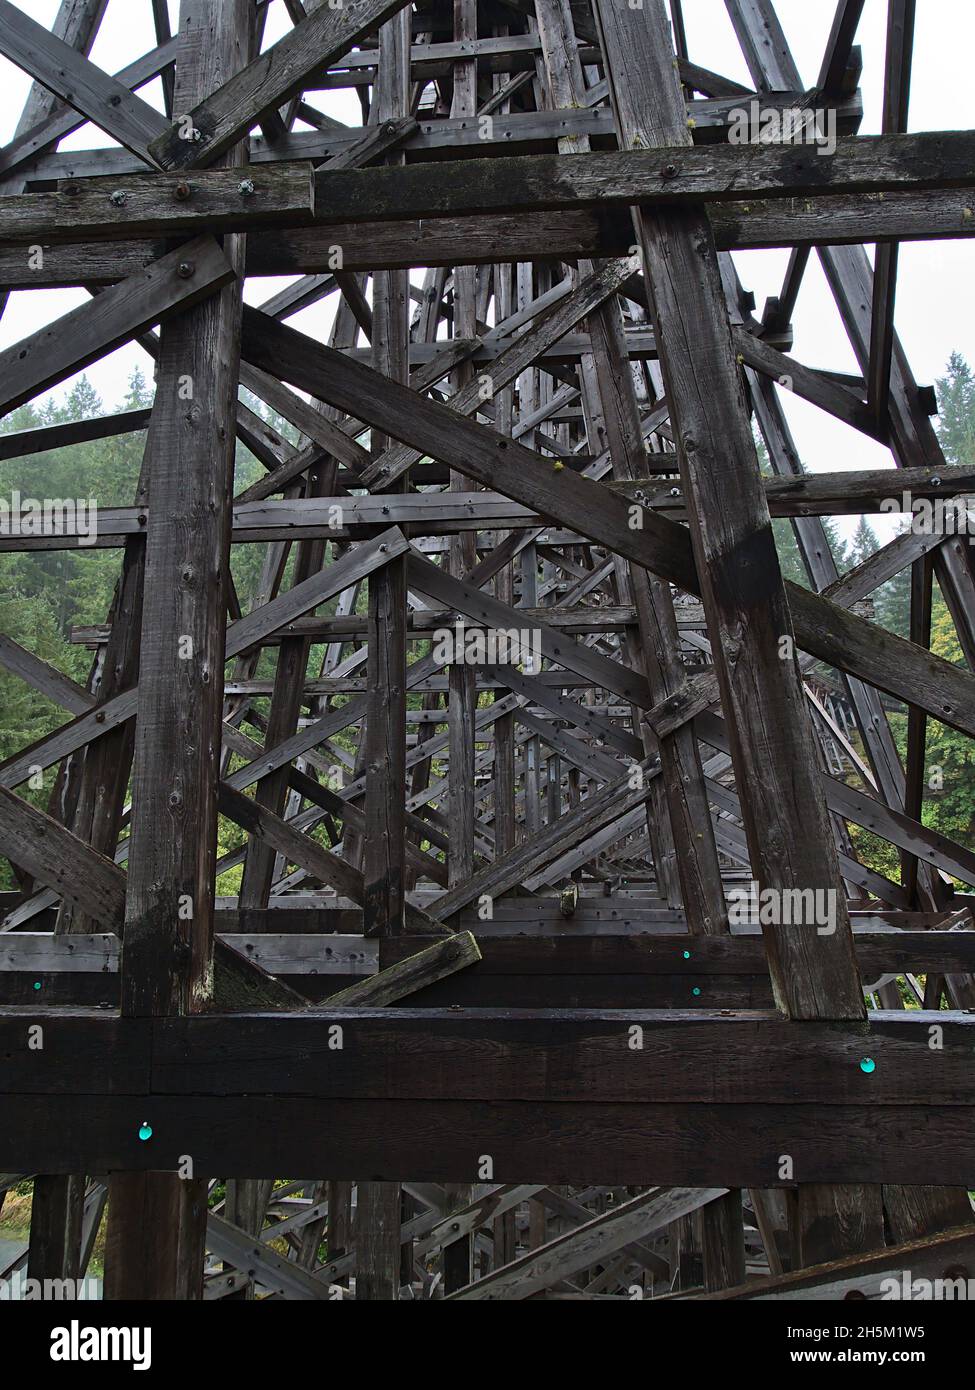 Vue de l'impressionnant pont de chemin de fer restauré Kinsol Trestle en bois sur l'île de Vancouver, Colombie-Britannique, Canada traversant la rivière Koksilah. Banque D'Images